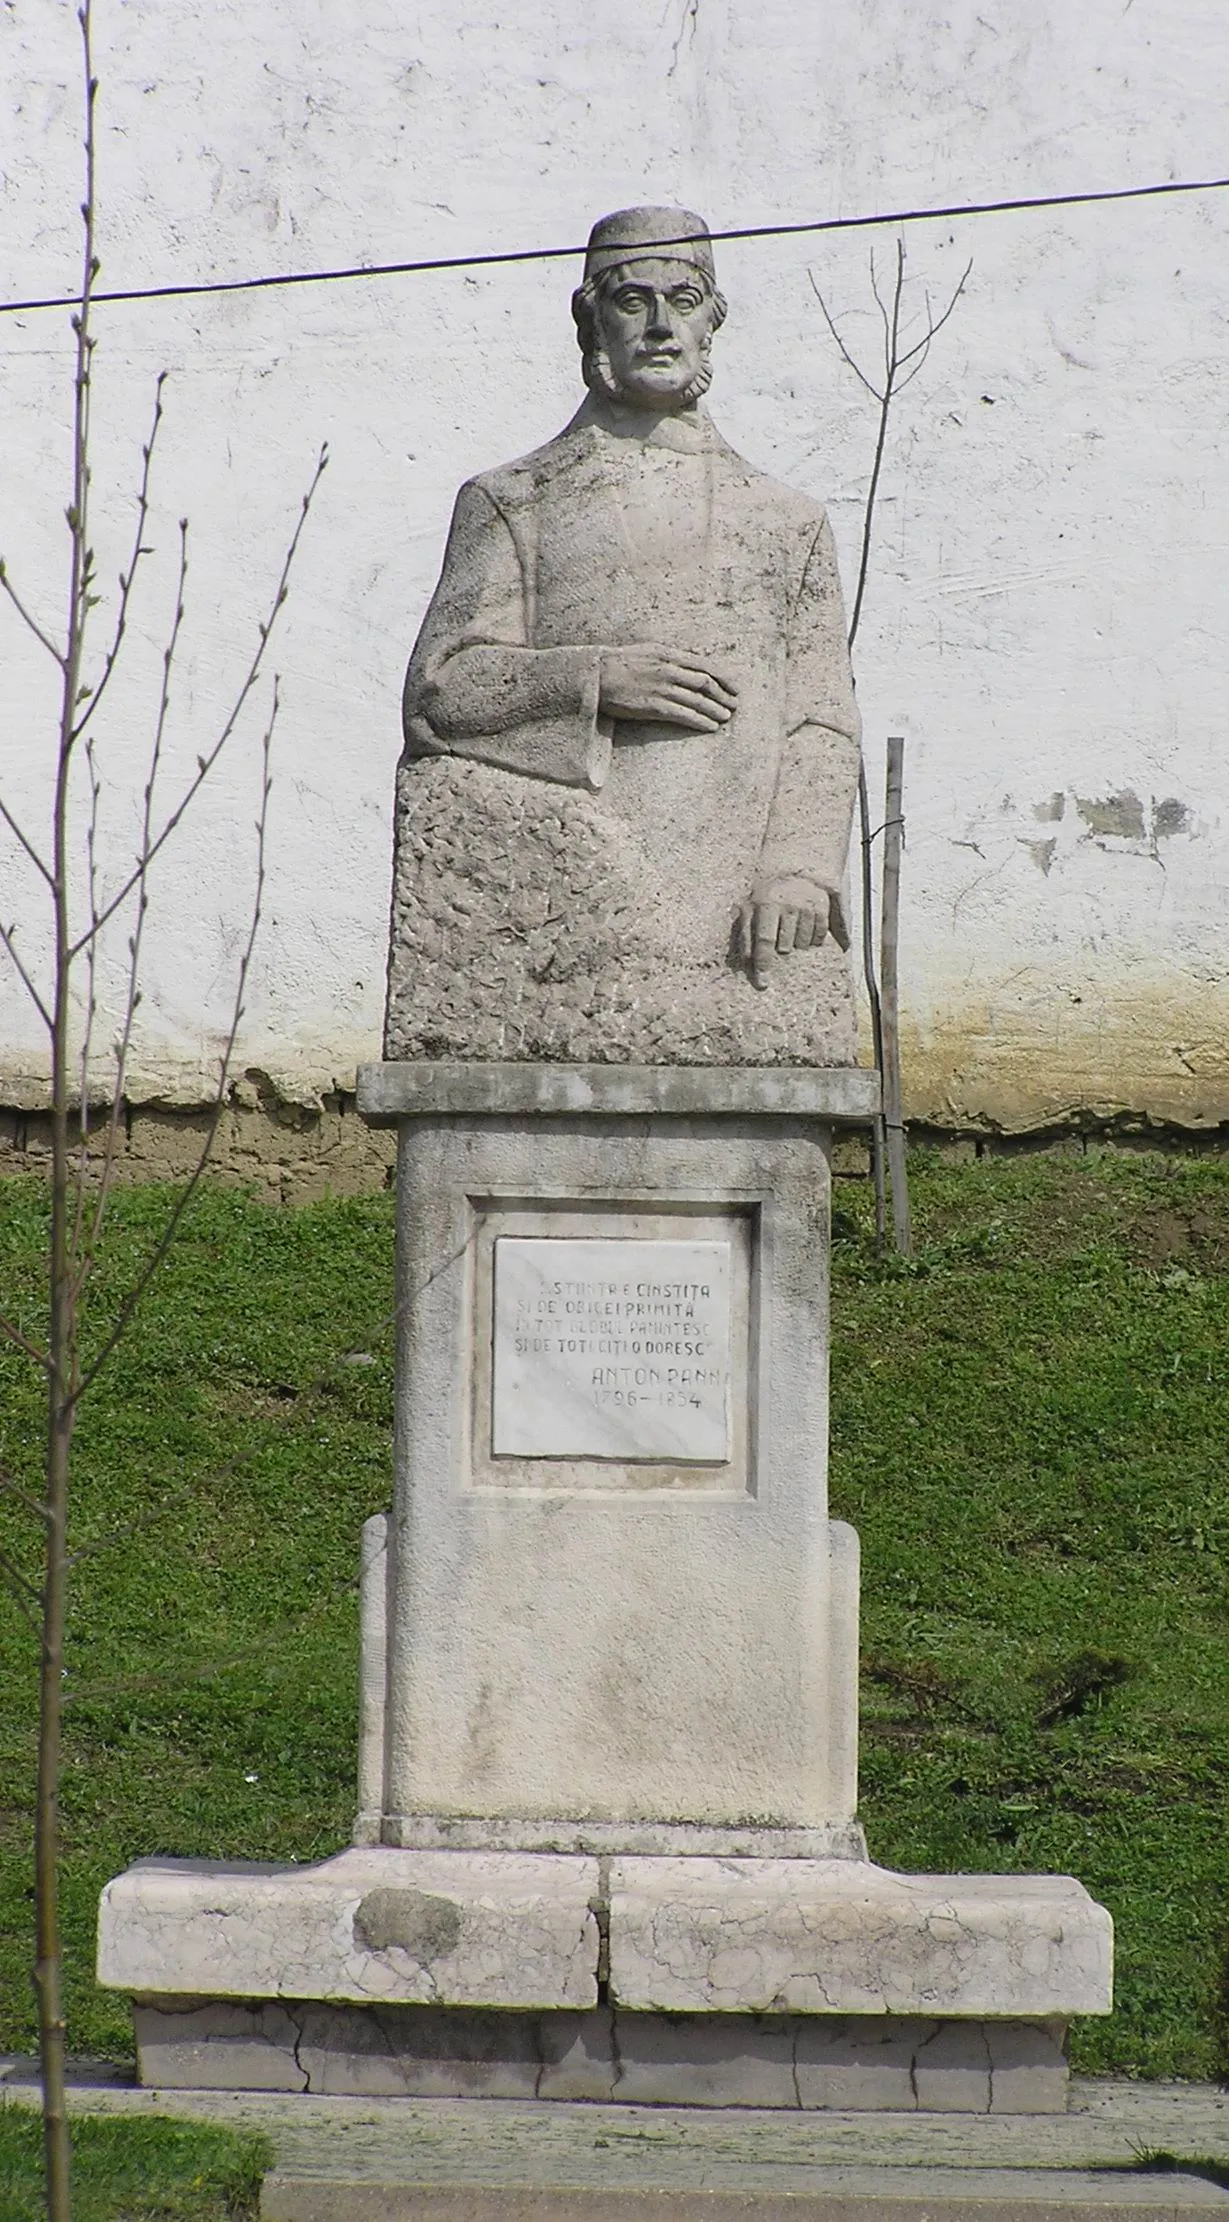 Photo showing: Statue of Anton Pann in Râmnicu Vâlcea, Romania